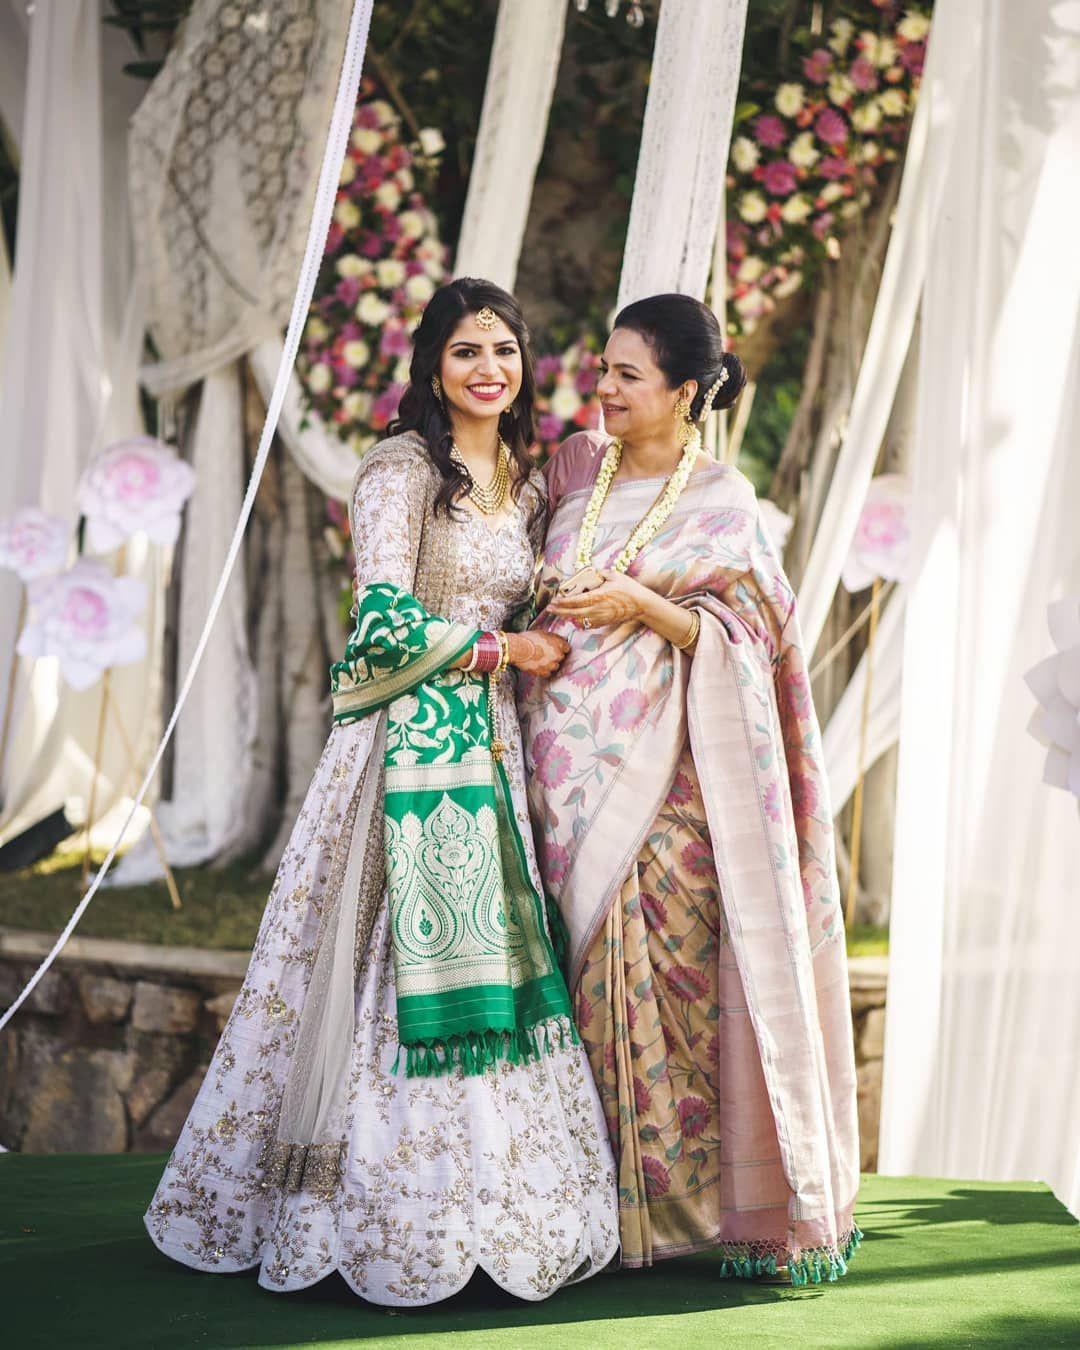 Interesting Ideas To Recreate Your Mother Or MIL's Bridal Look - Pyaari  Weddings